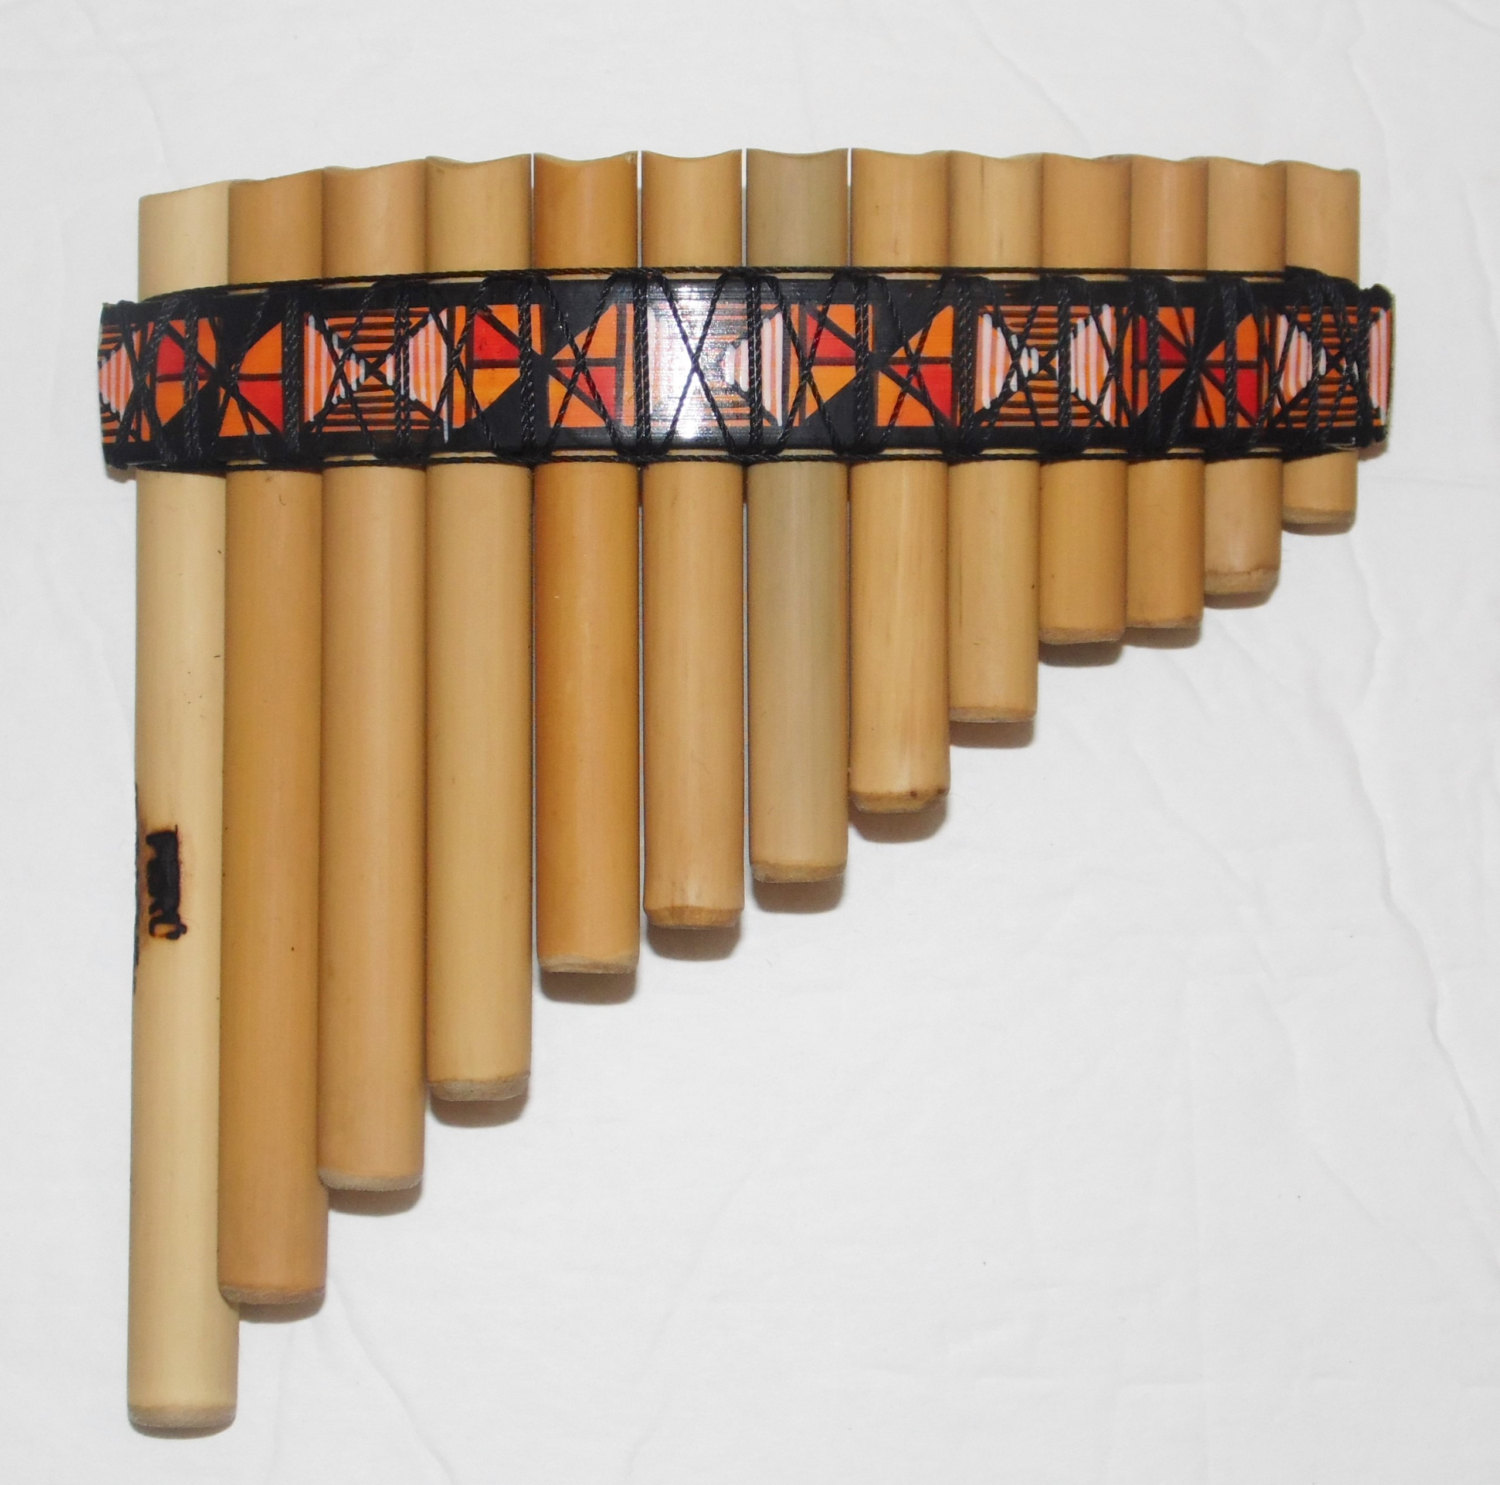 Pan Flute 13 pipes Inca Desings from Peru Item in USA